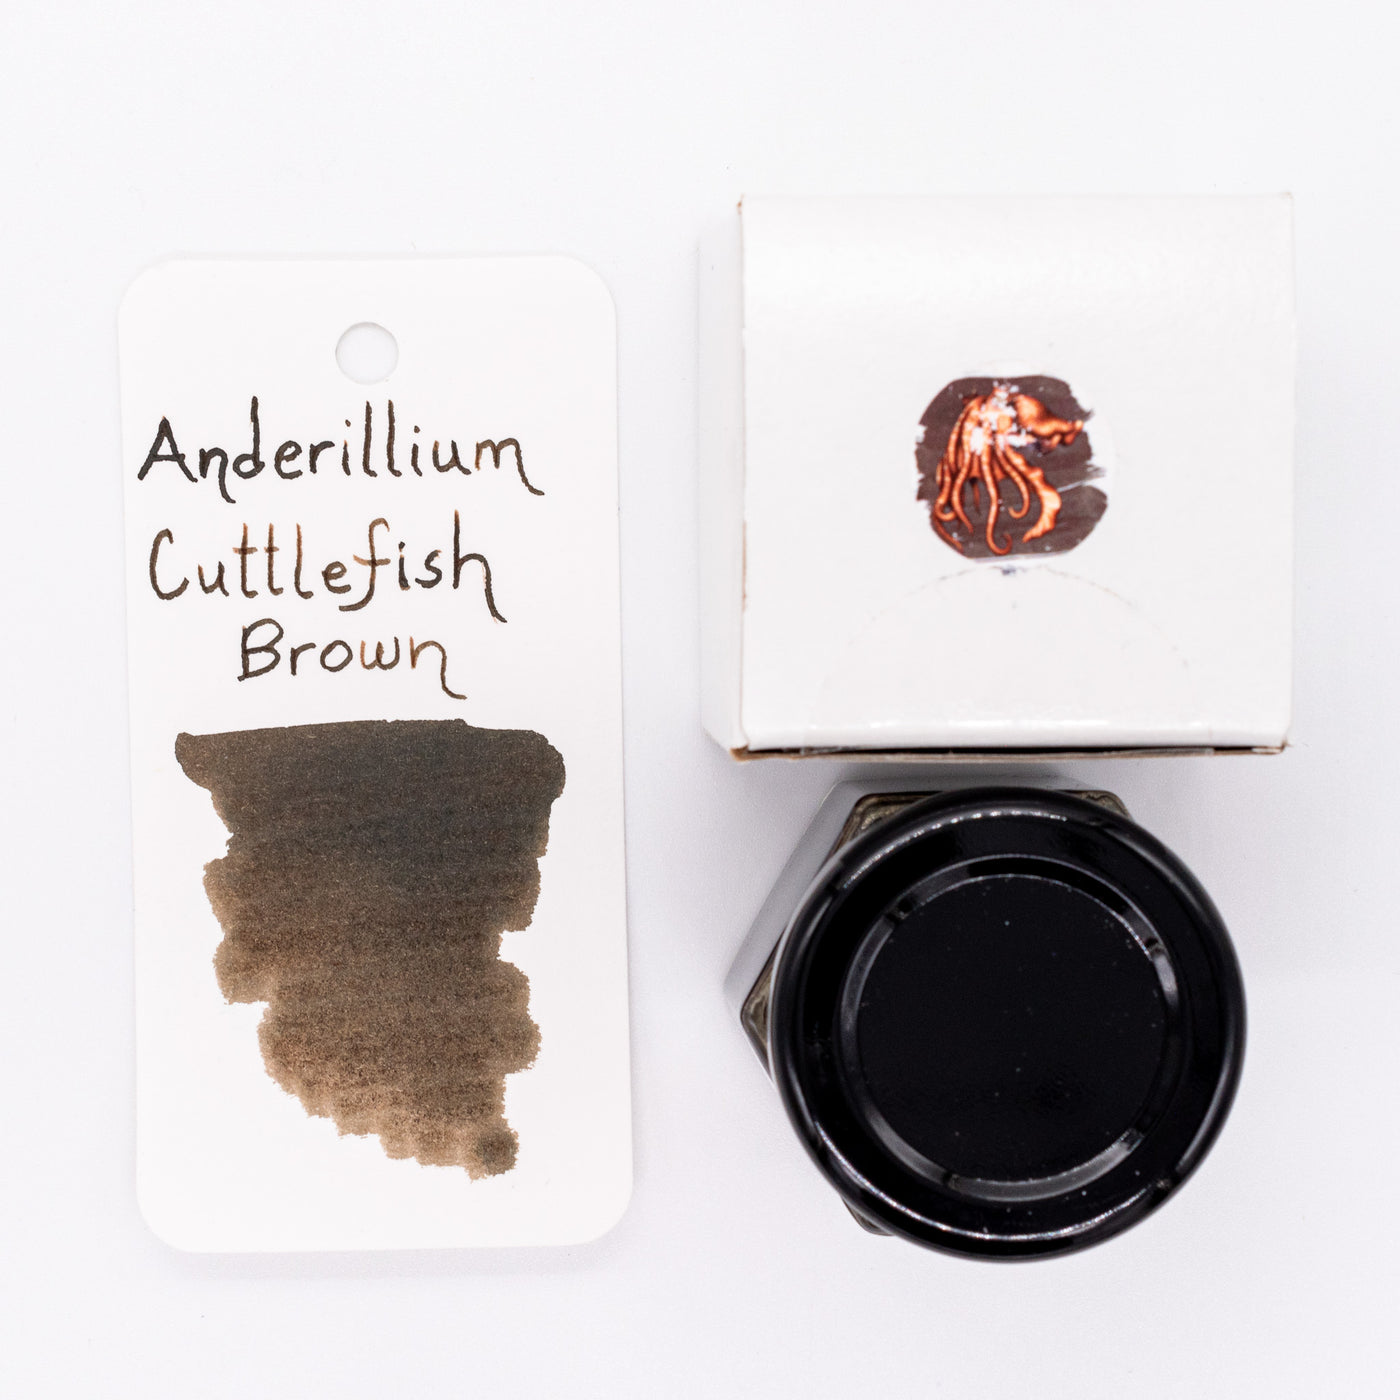 Anderillium Cuttlefish Brown Ink Bottle 1.5oz glass